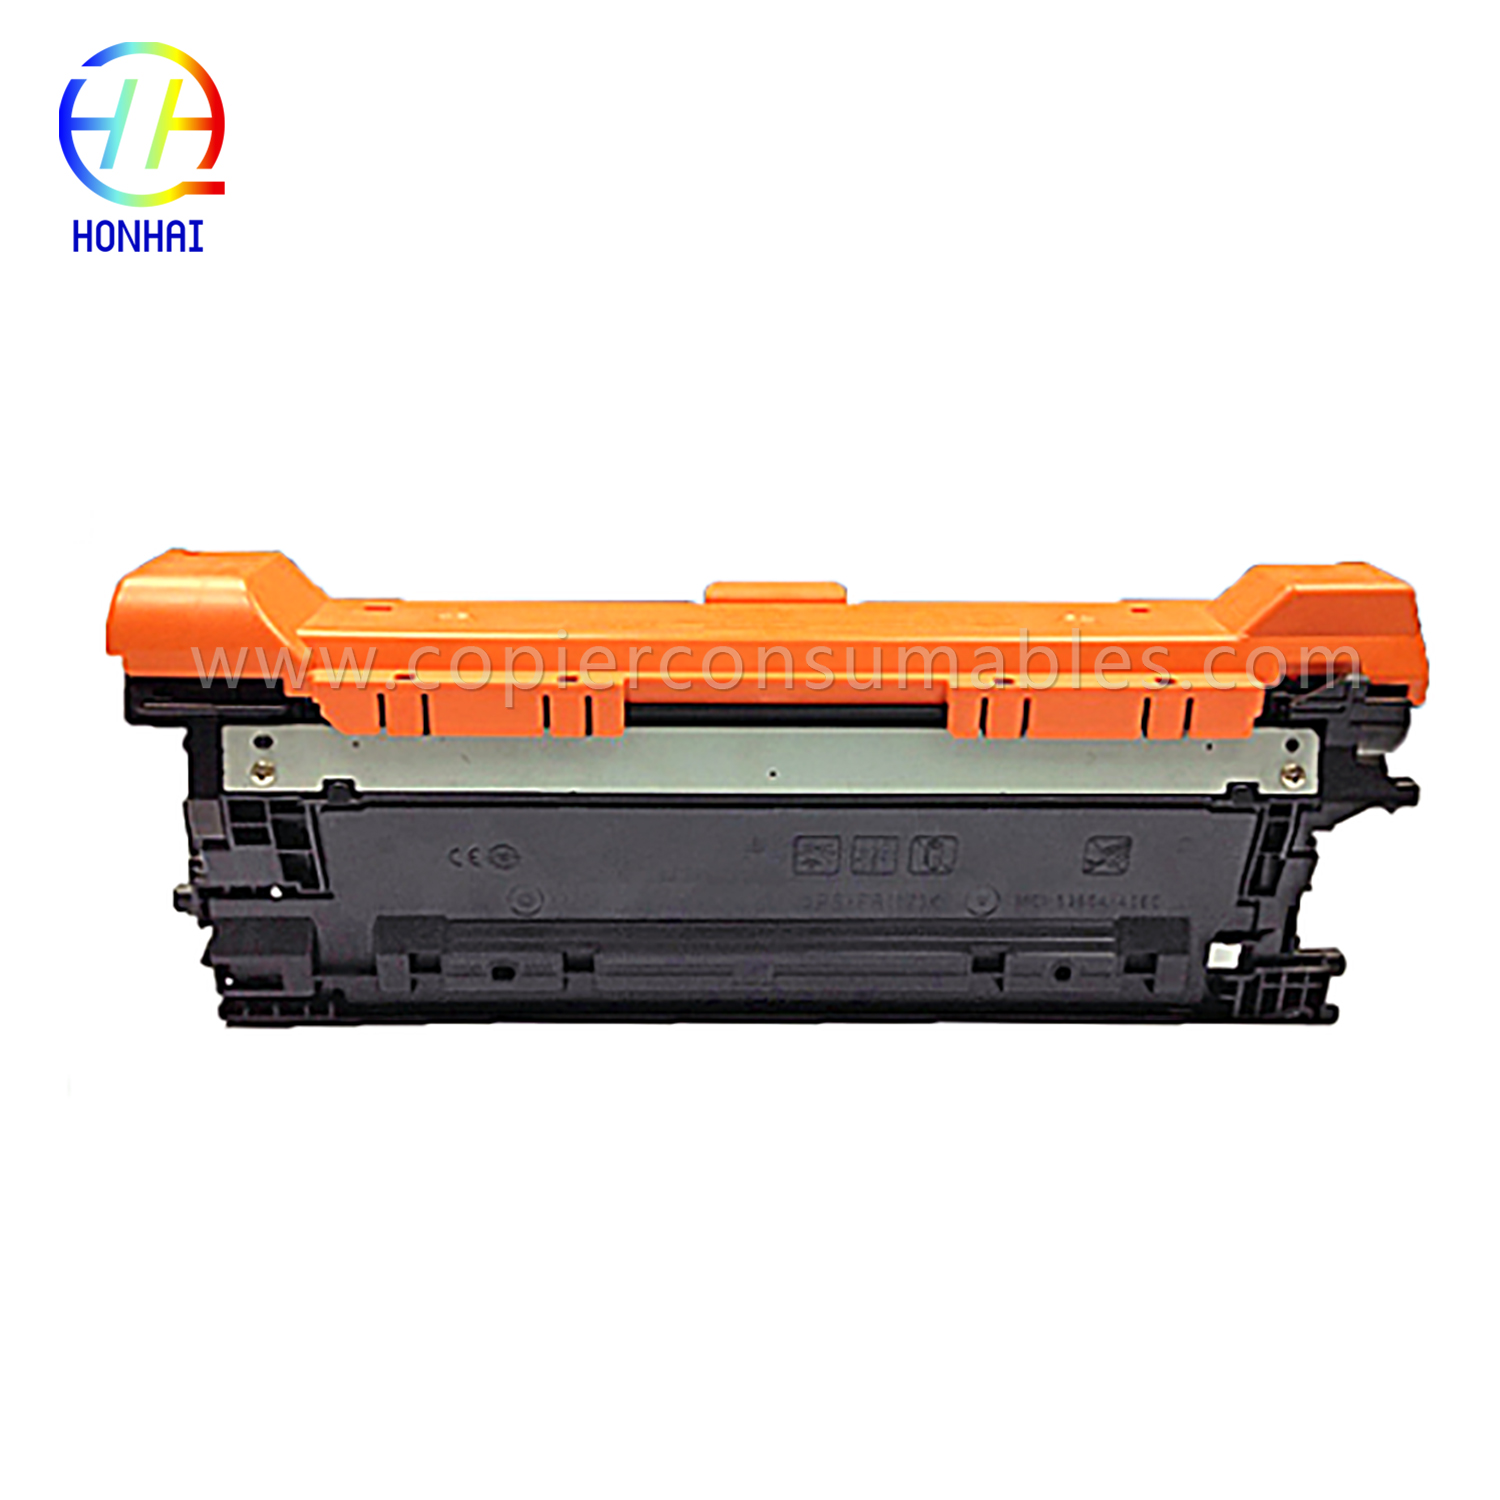 Color Toner Cartridges for HP Color Laserjet Enterprise M552 M553 CF362X